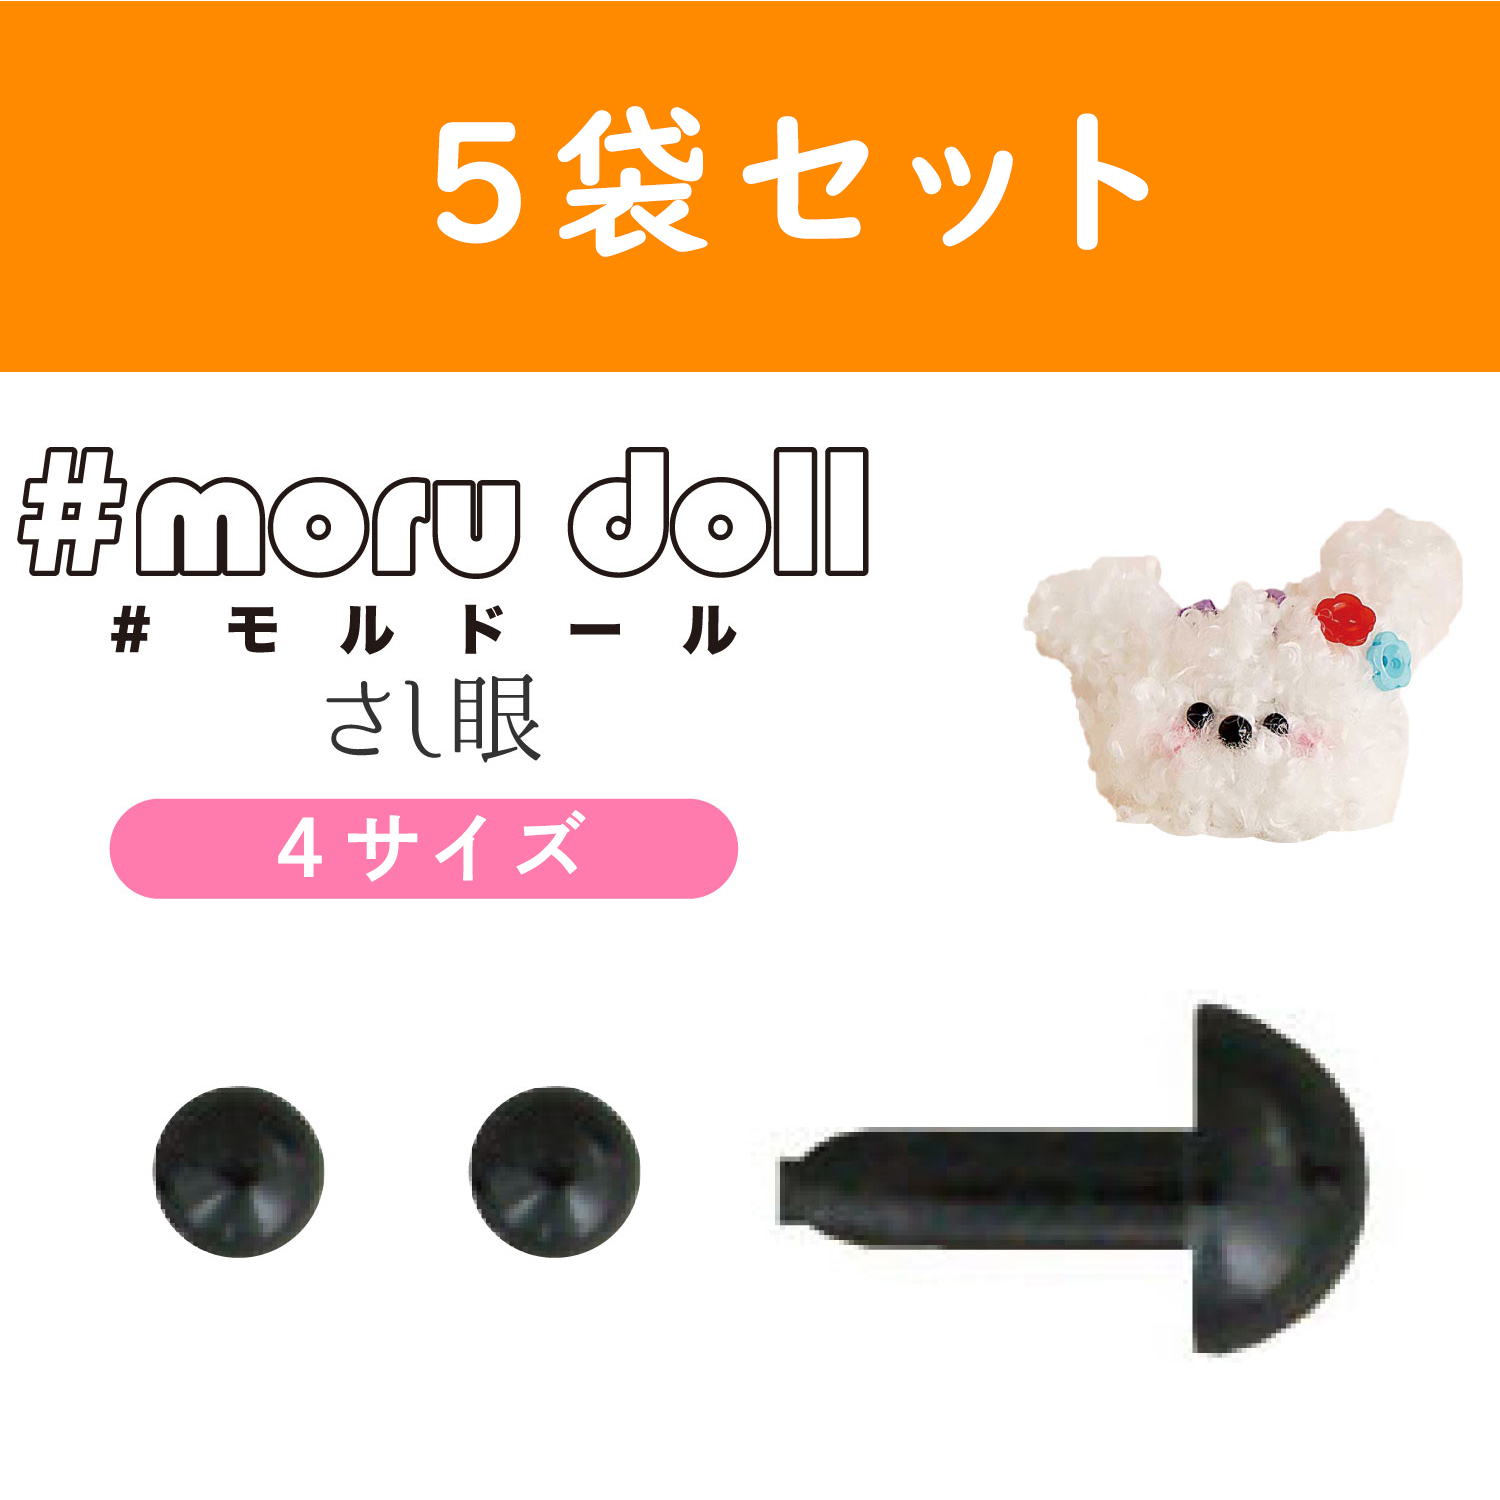 【キャンペーン対象】MOL-5 モール人形 モールドール用さし目 黒 10個入×5袋 (セット)